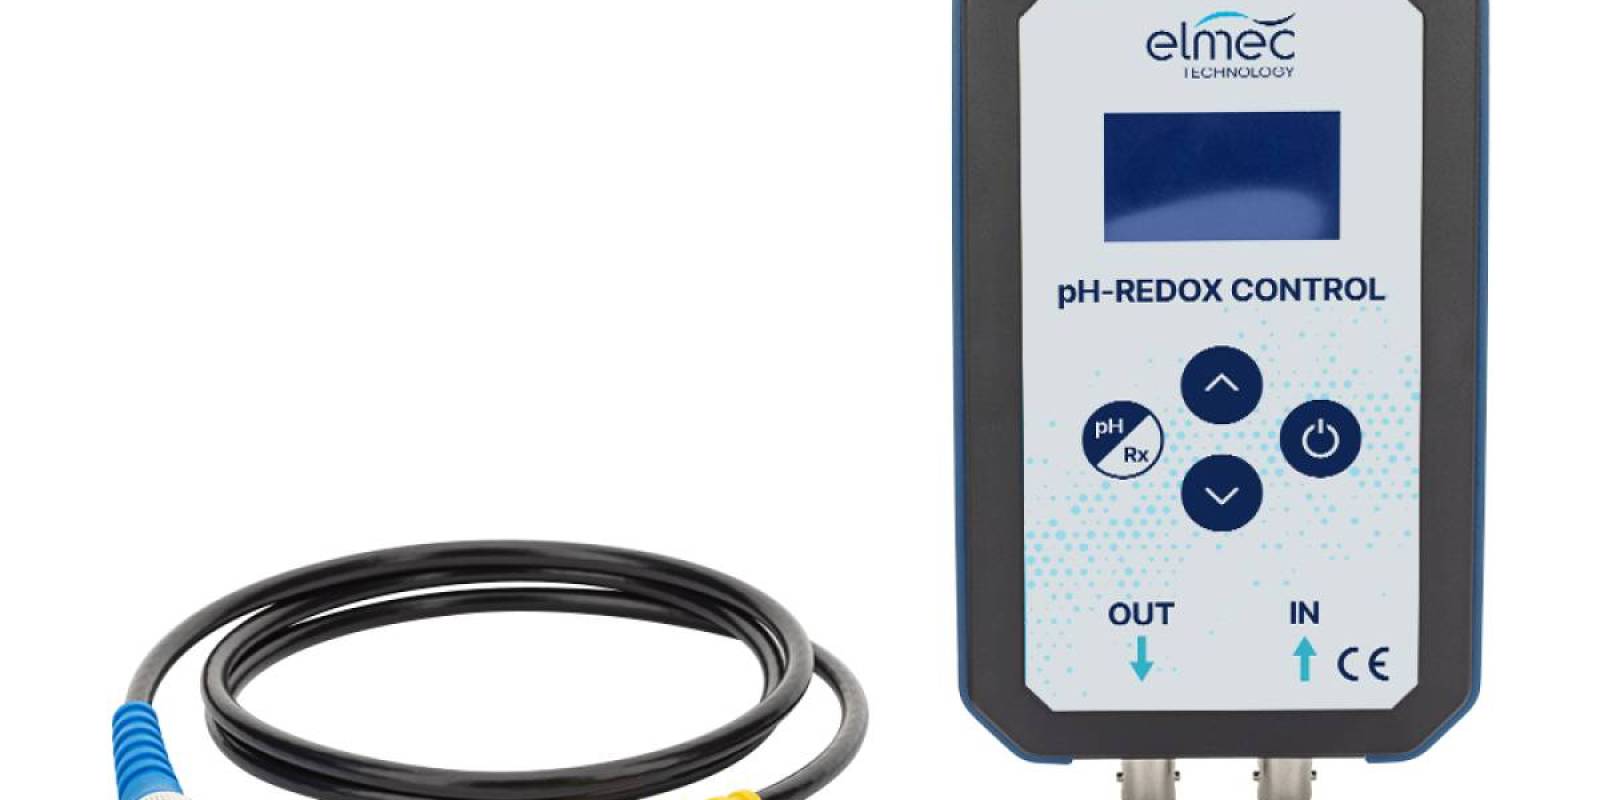 Il nuovo Simulatore Elmec Technology pH/REDOX CONTROL oggi disponibile sul mercato Europeo